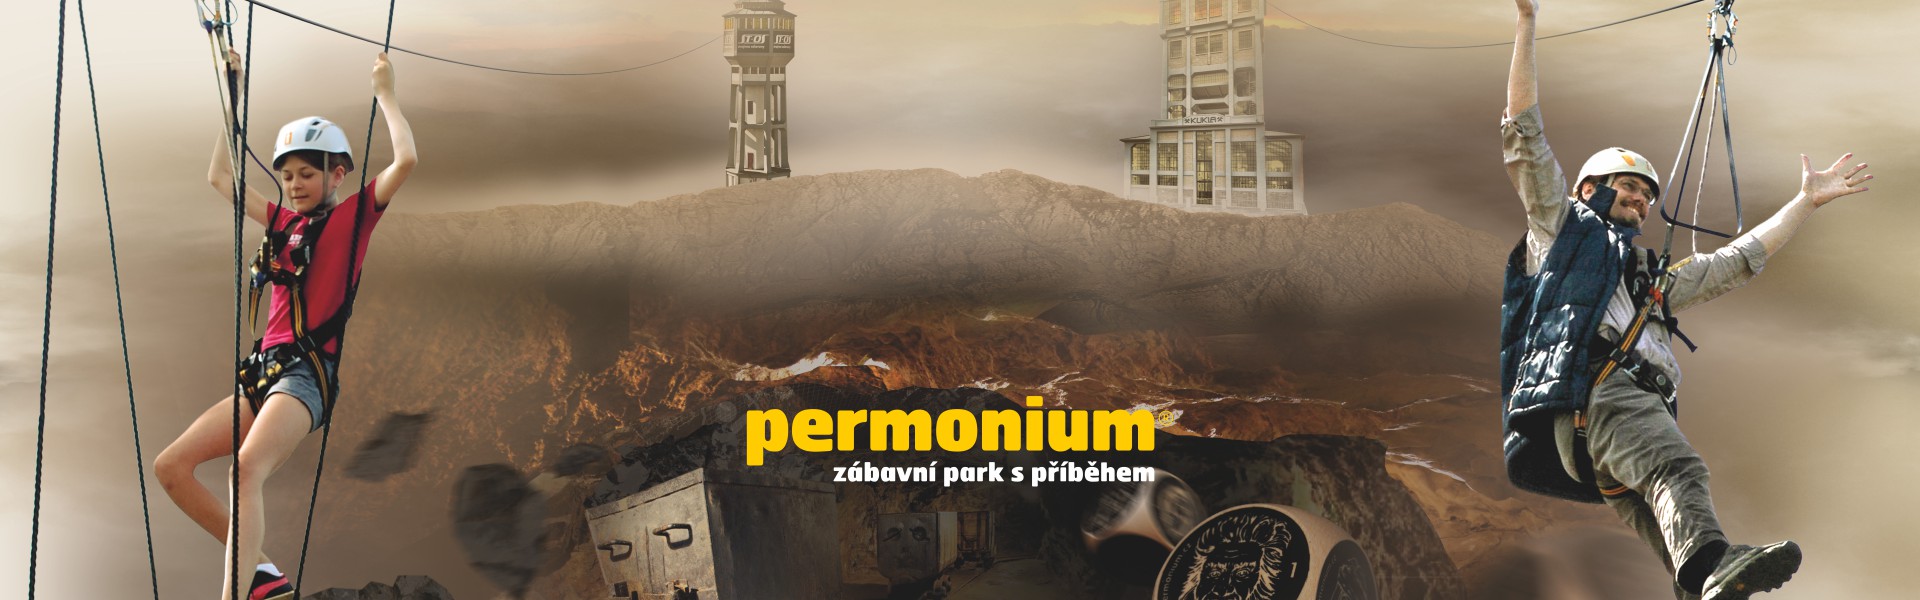 Permonium